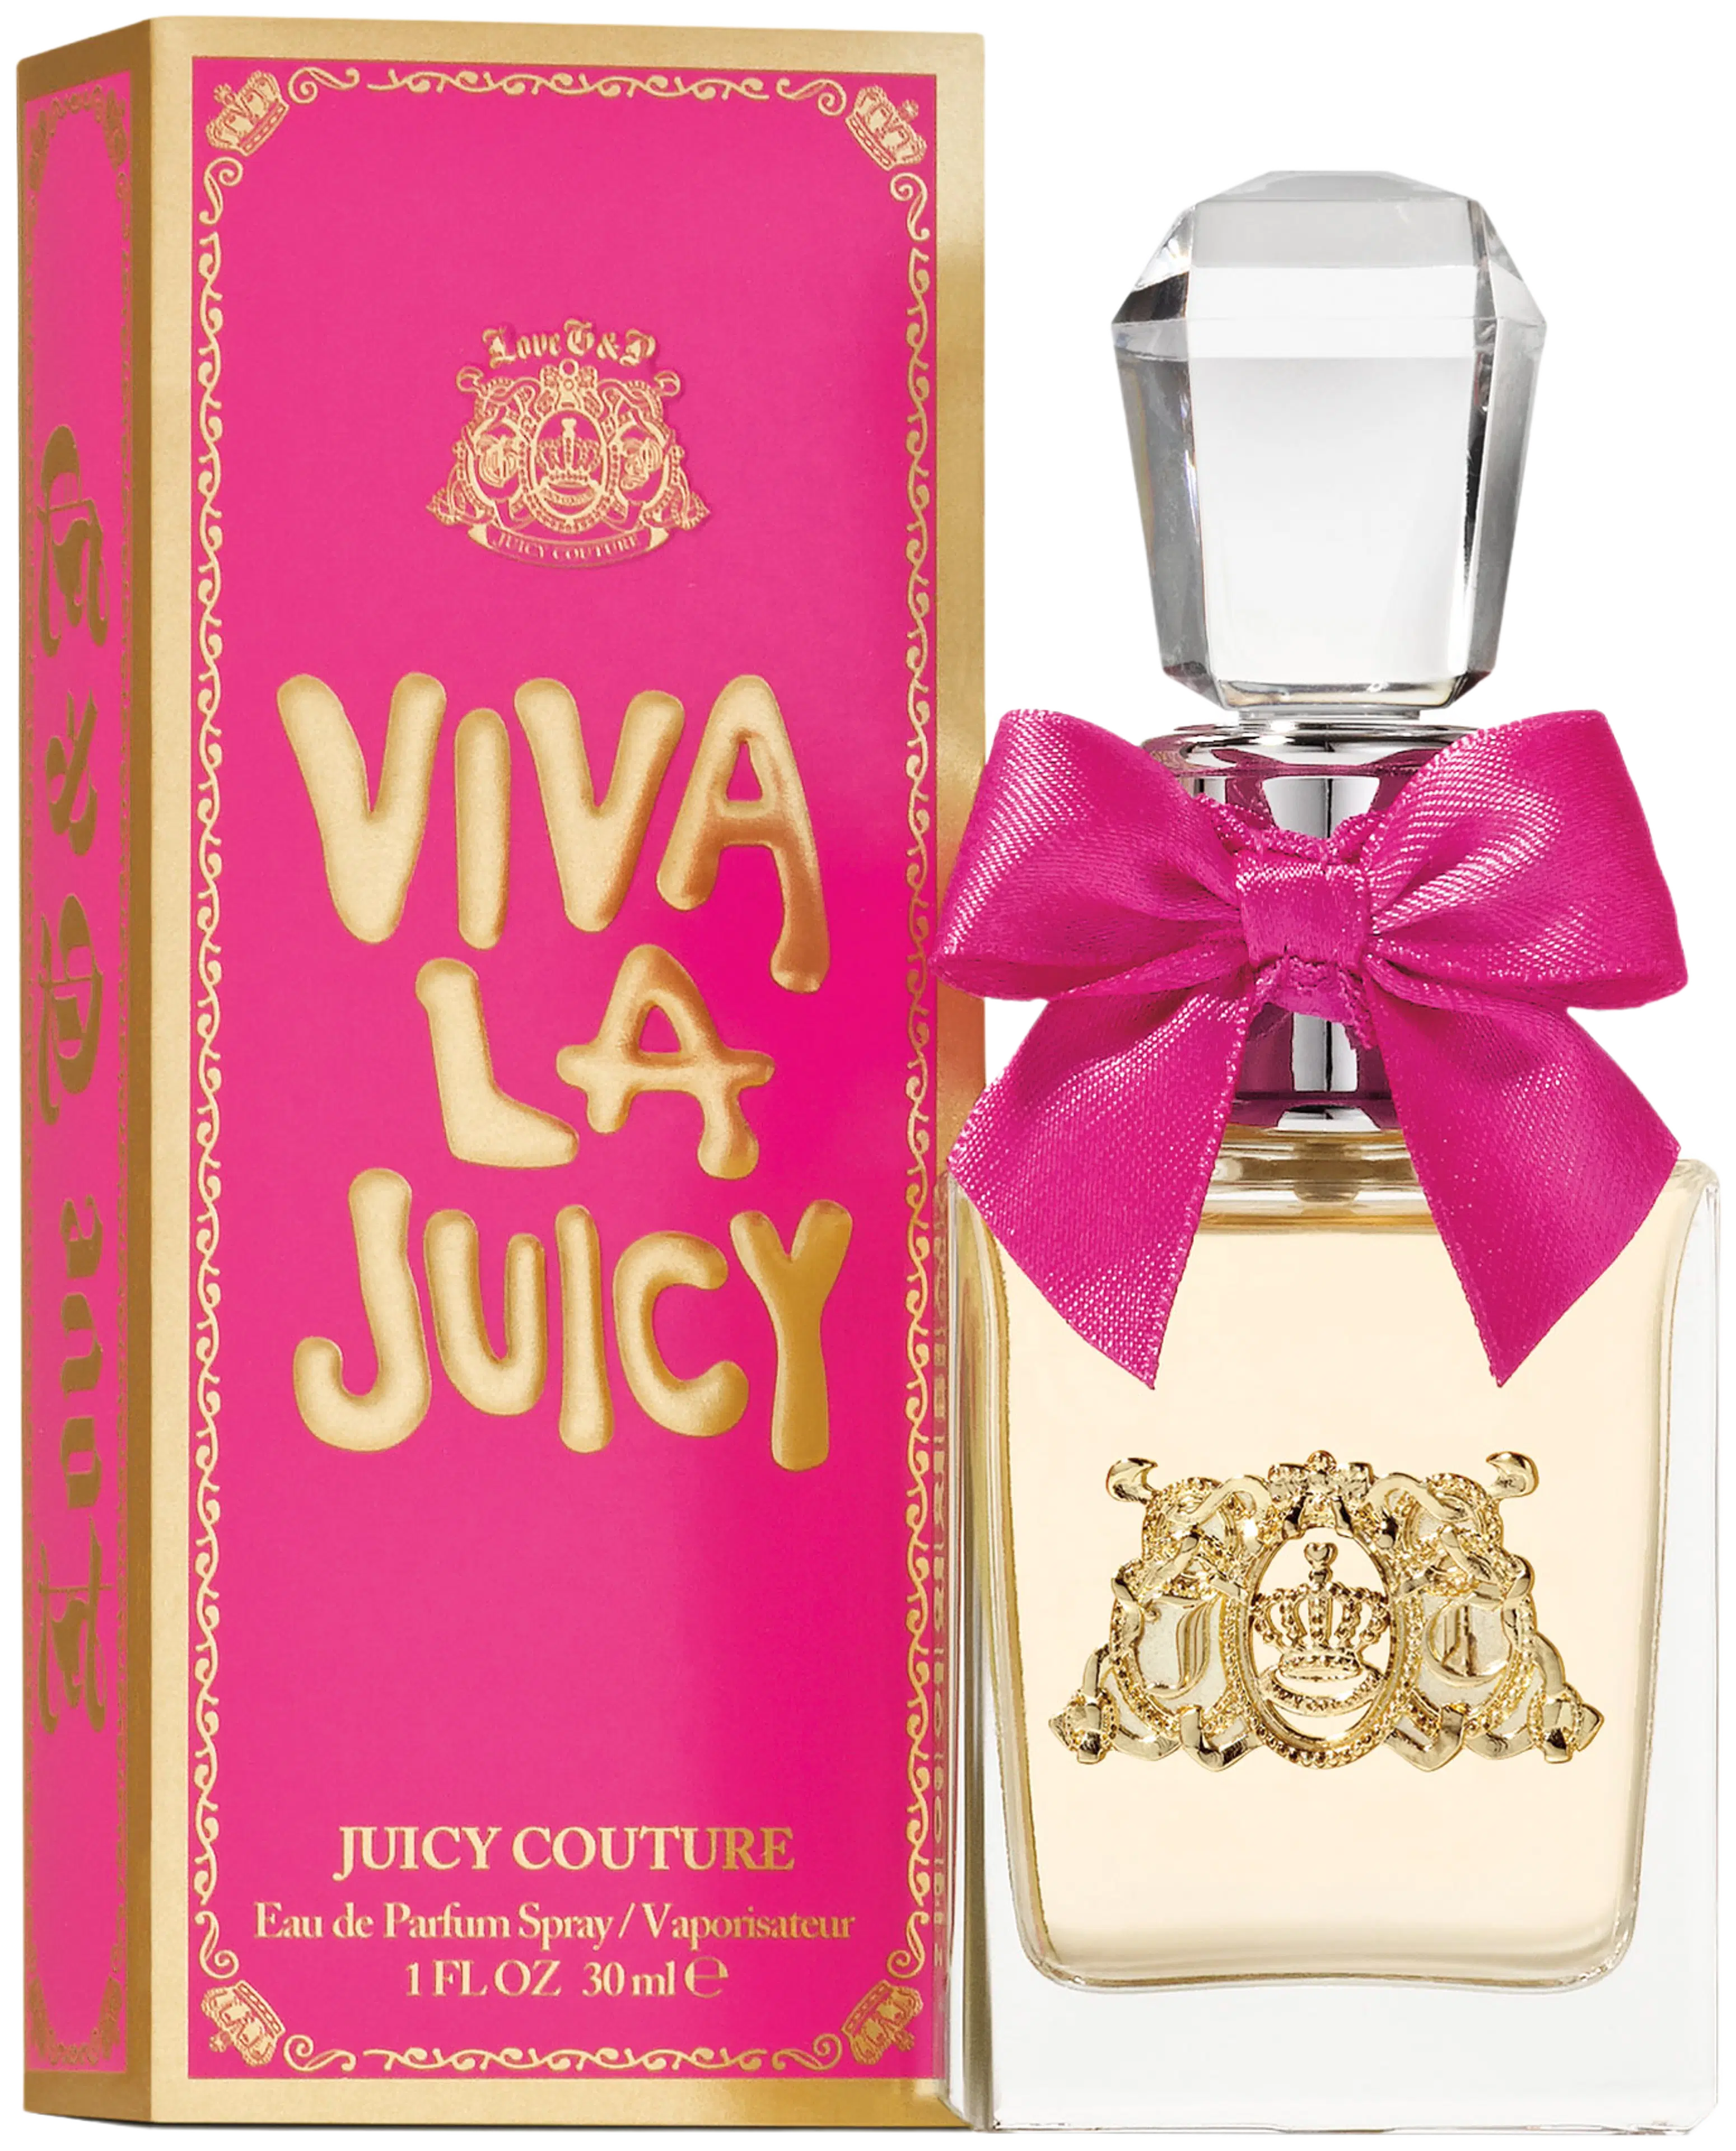 Juicy Couture Viva La Juicy EdP tuoksu 30ml